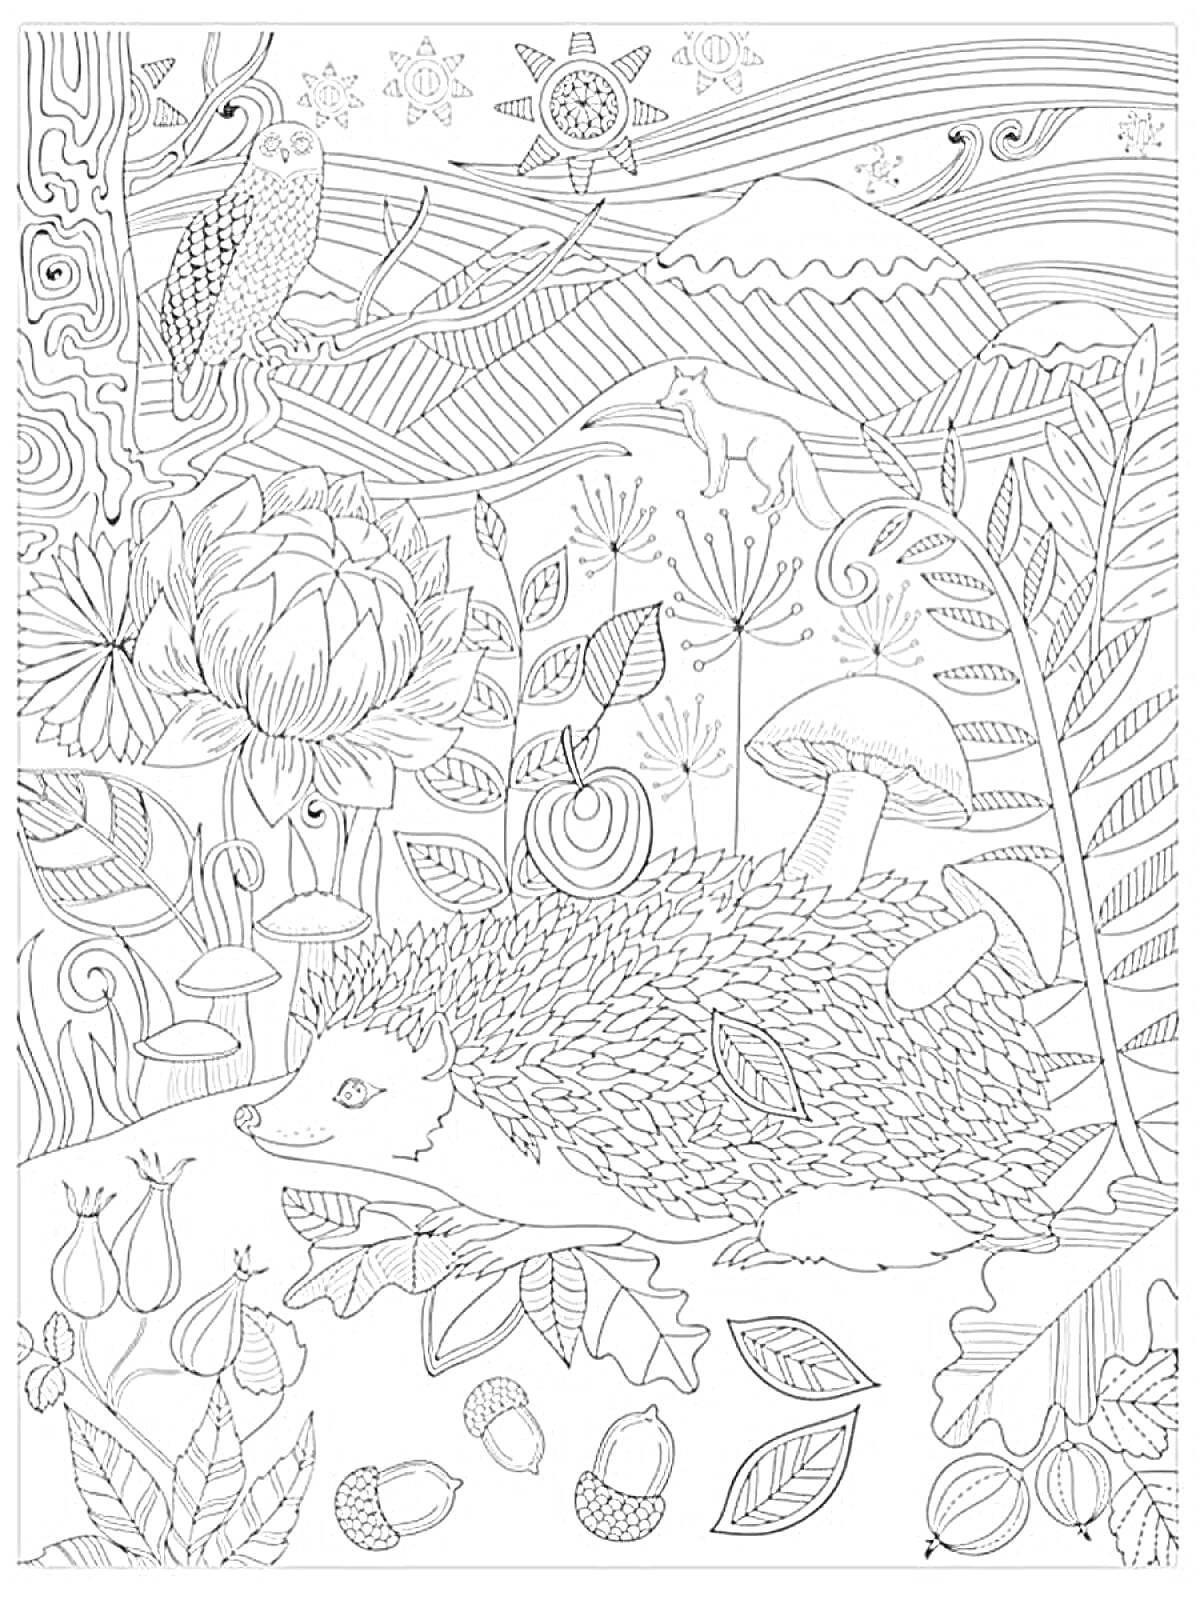 Раскраска Медитирующий ёжик в лесной сказке - ёжик, грибы, сова, цветок лотоса, гора, лиса, листья, желуди, цветочные бутоны, прозрачные линии природы и узоры